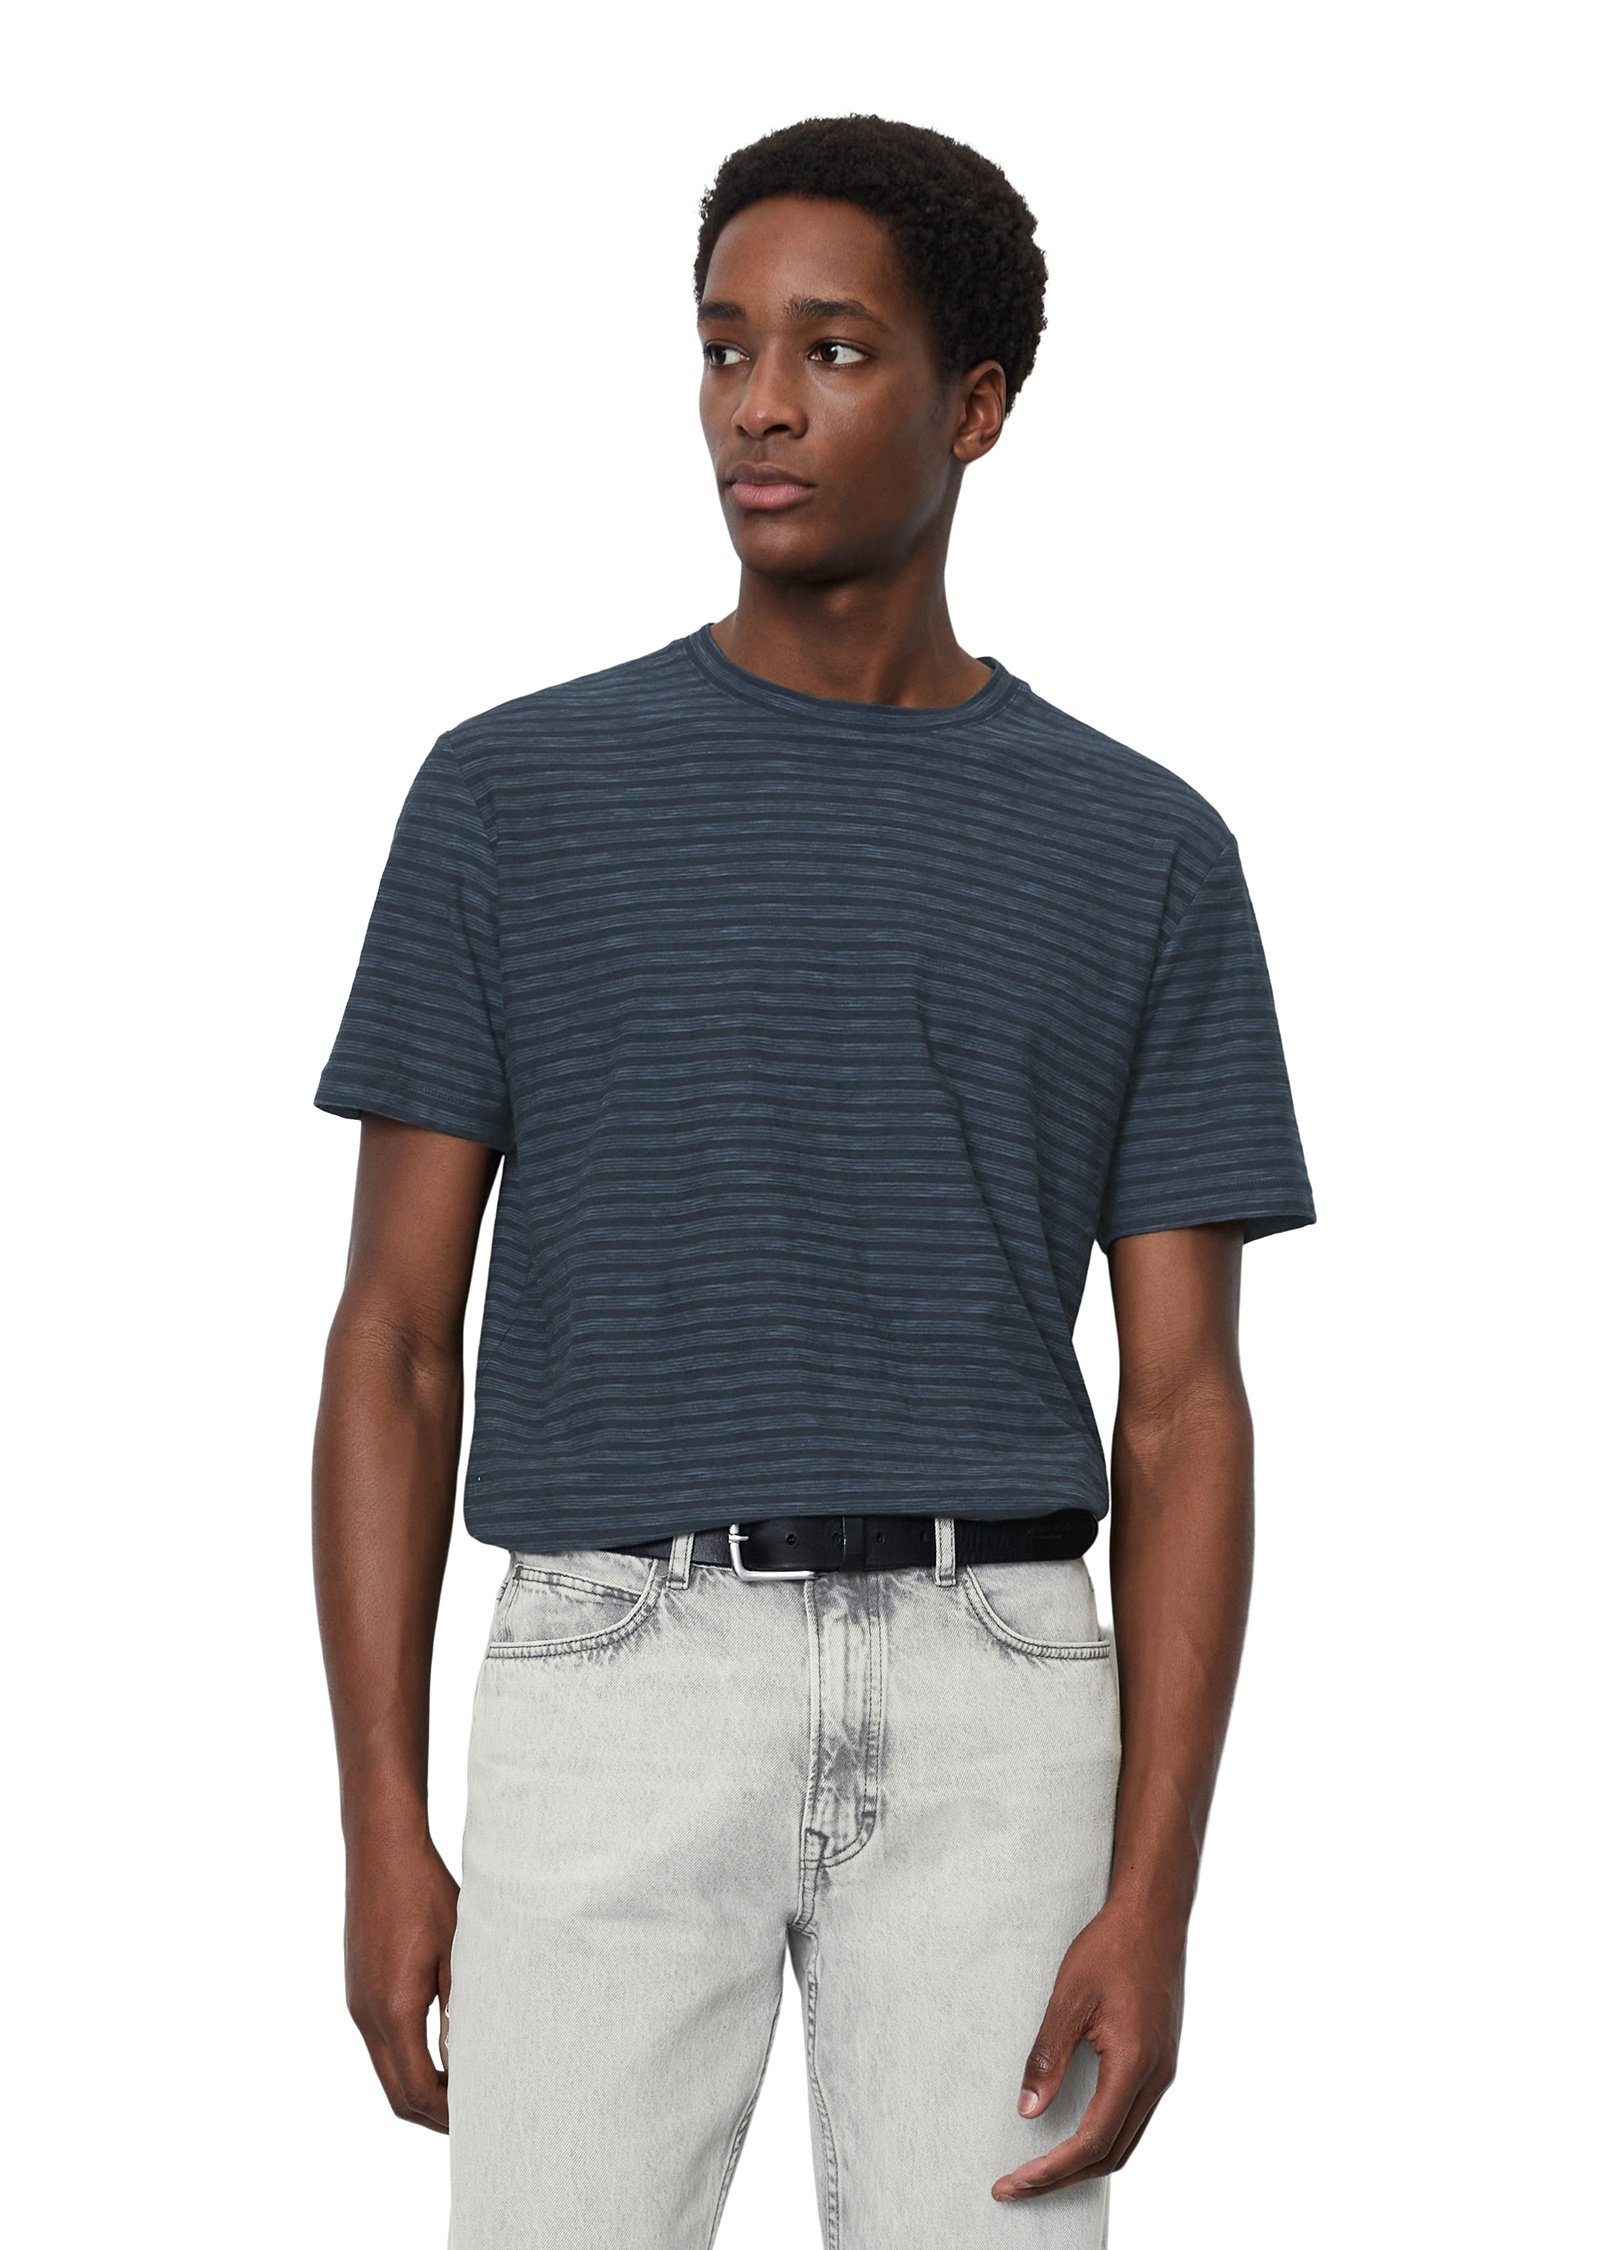 Marc O'Polo T-Shirt in Slub-Jersey dunkelblau softem